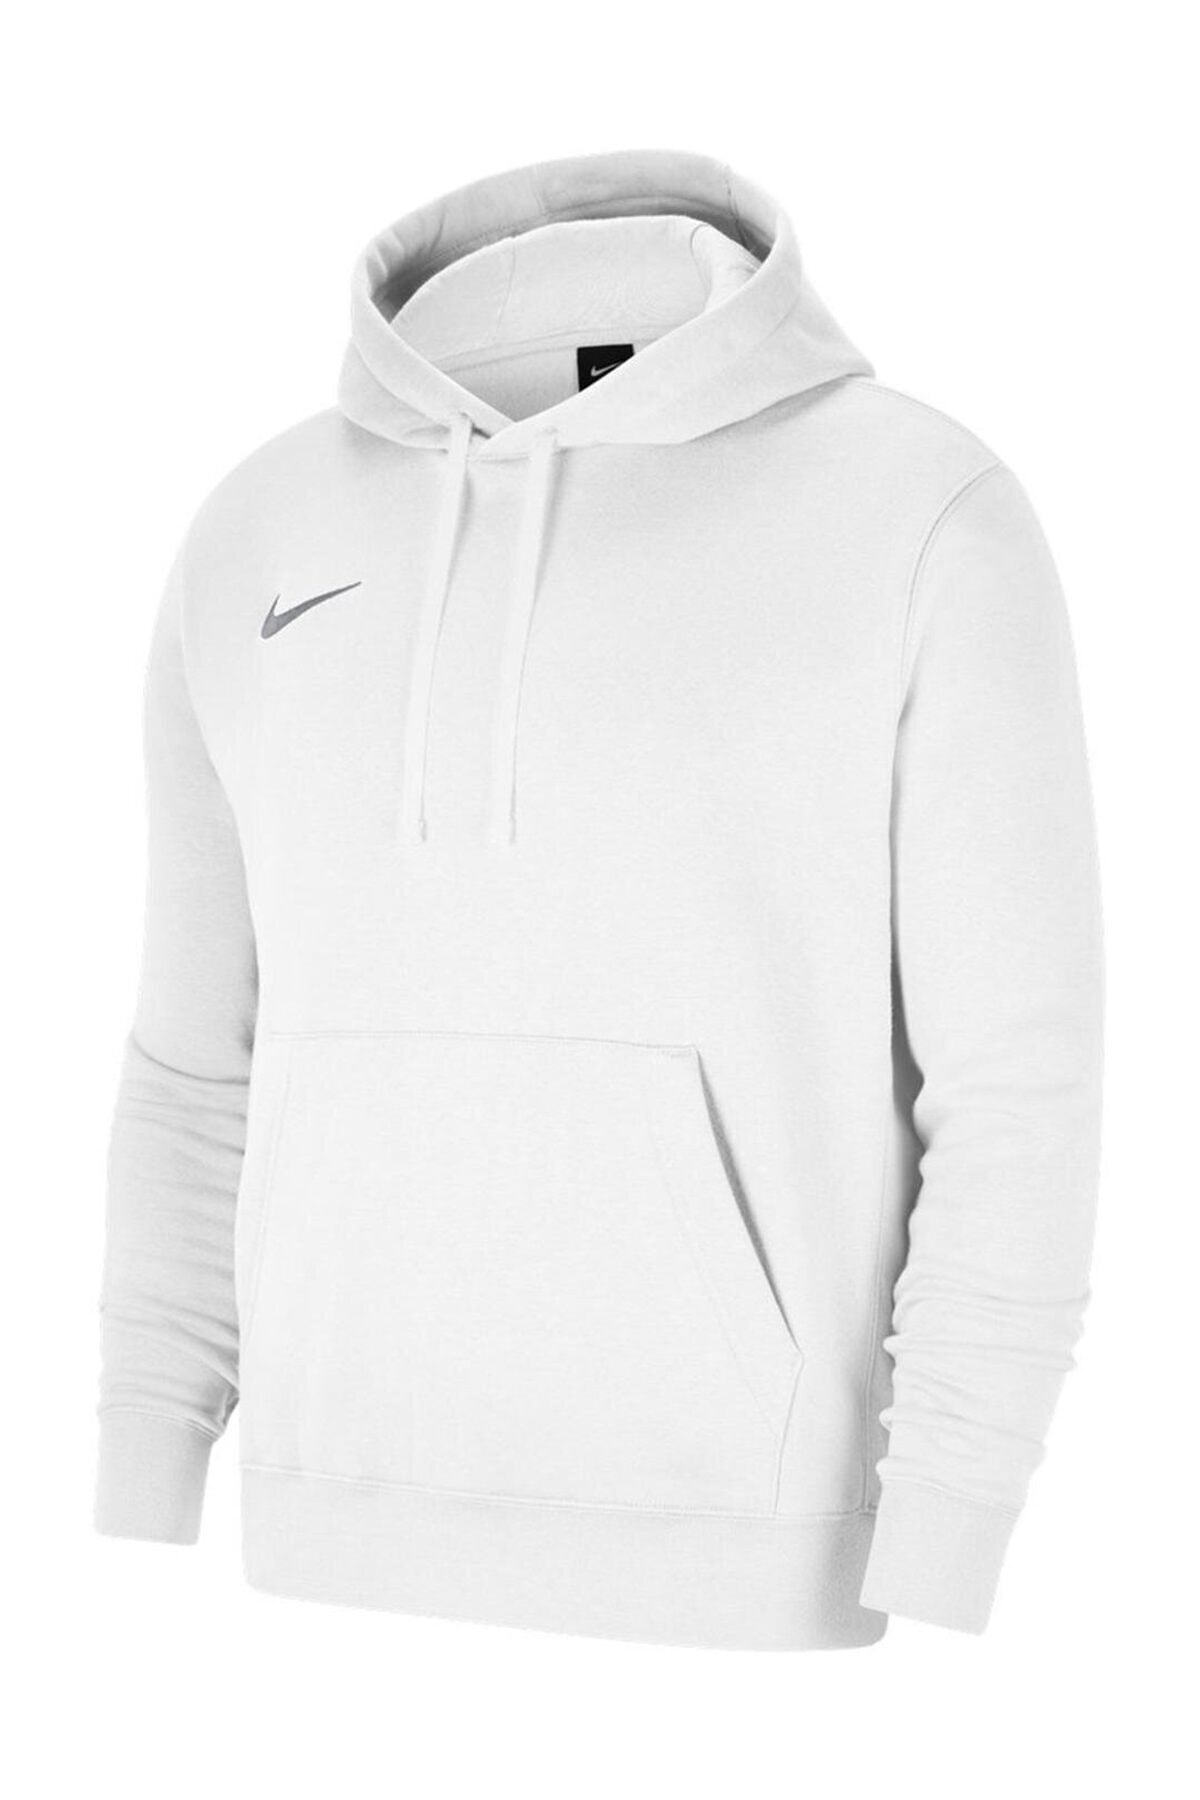 سوشرت نایک کلاهدار مردانه سفید هودی پارک Nike